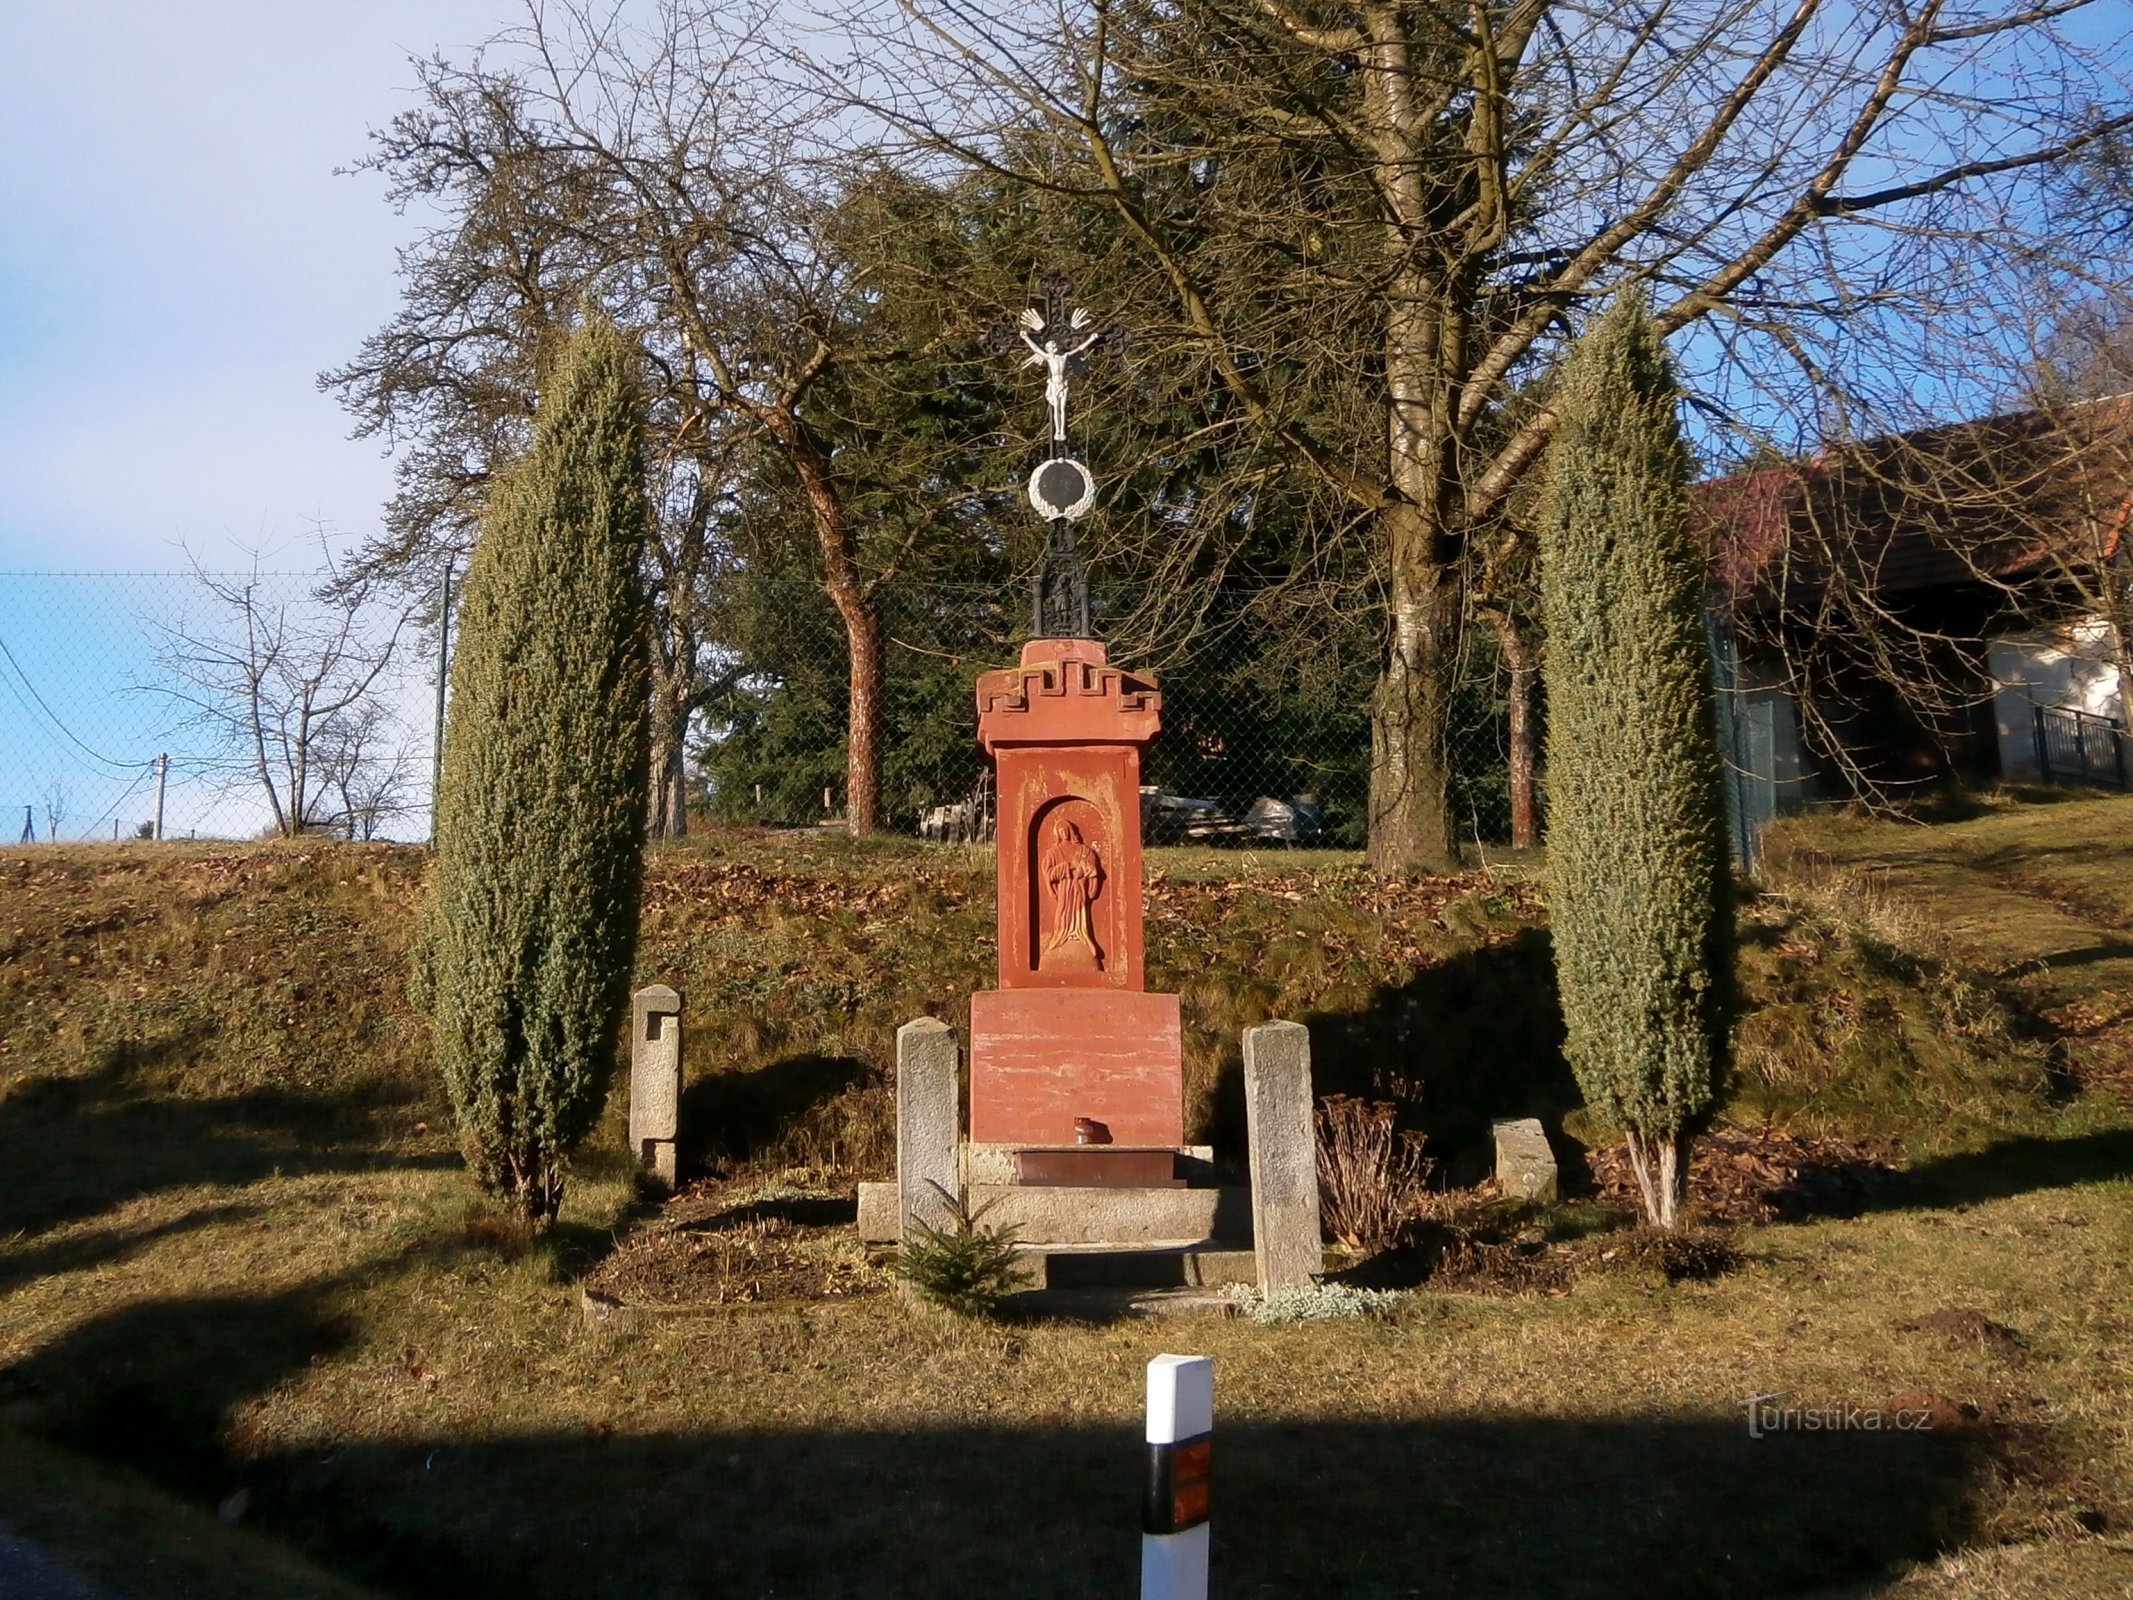 Cruce la nr. 116 (Libňatov, 28.12.2016)